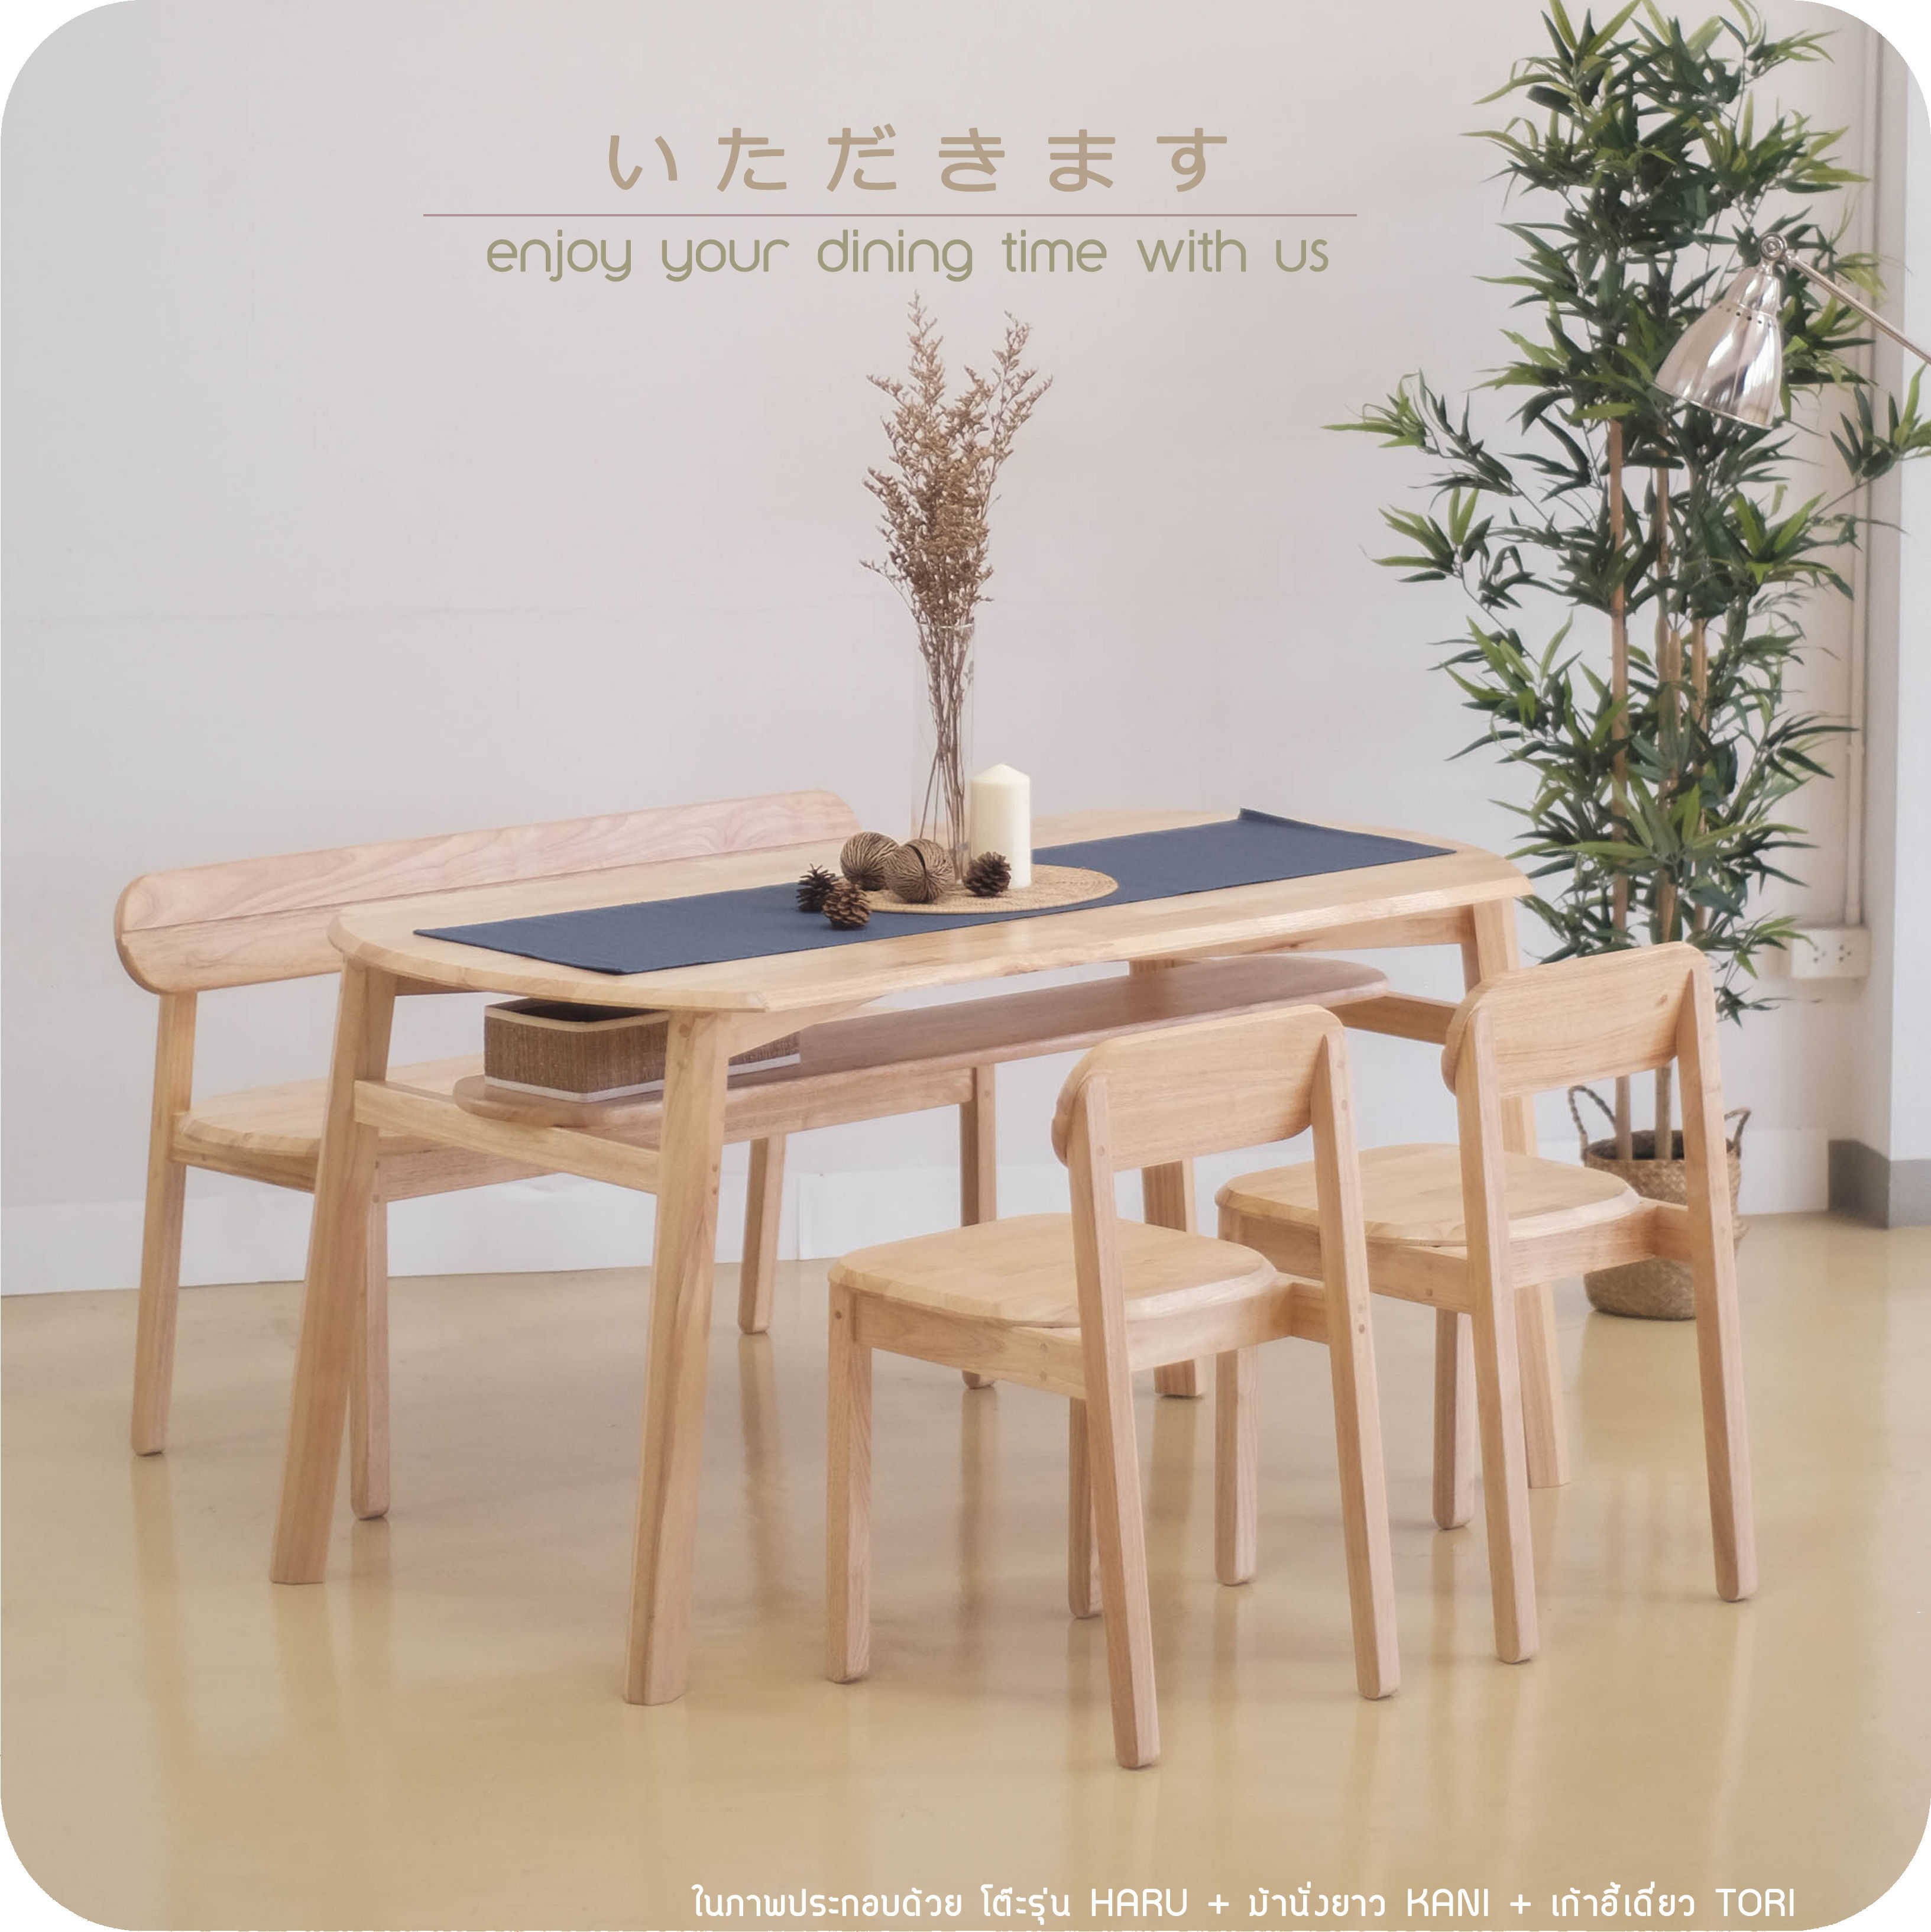 ชุดโต๊ะอาหารรุ่น
HARU + ม้านั่งยาว KANI + เก้าอี้เดี่ยวรุ่น TORI 